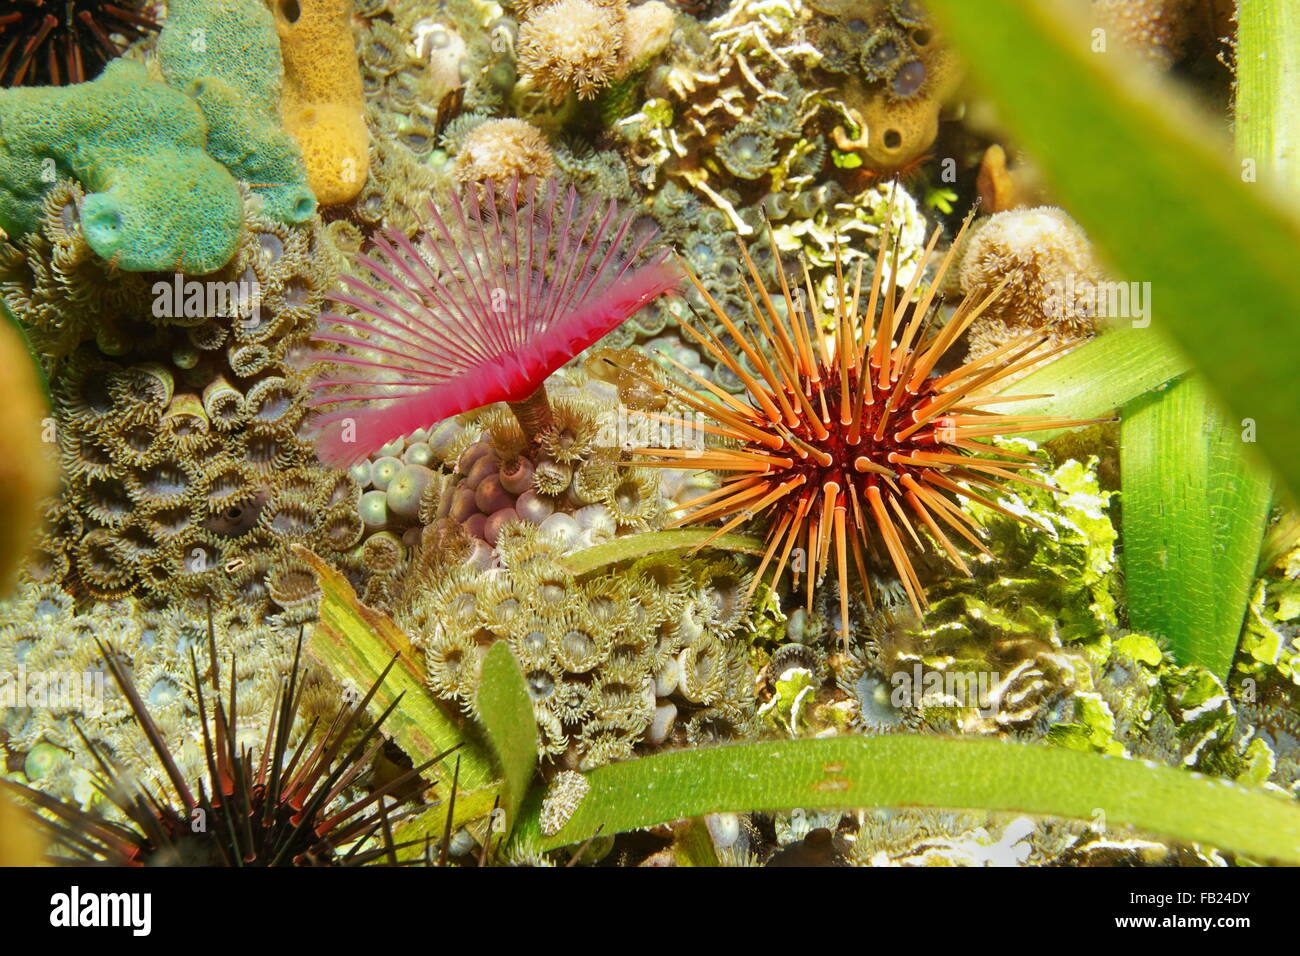 La vita di mare sul fondale, reef urchin con split-crown feather duster worm e mat zoanthid, Mar dei Caraibi e America centrale Foto Stock